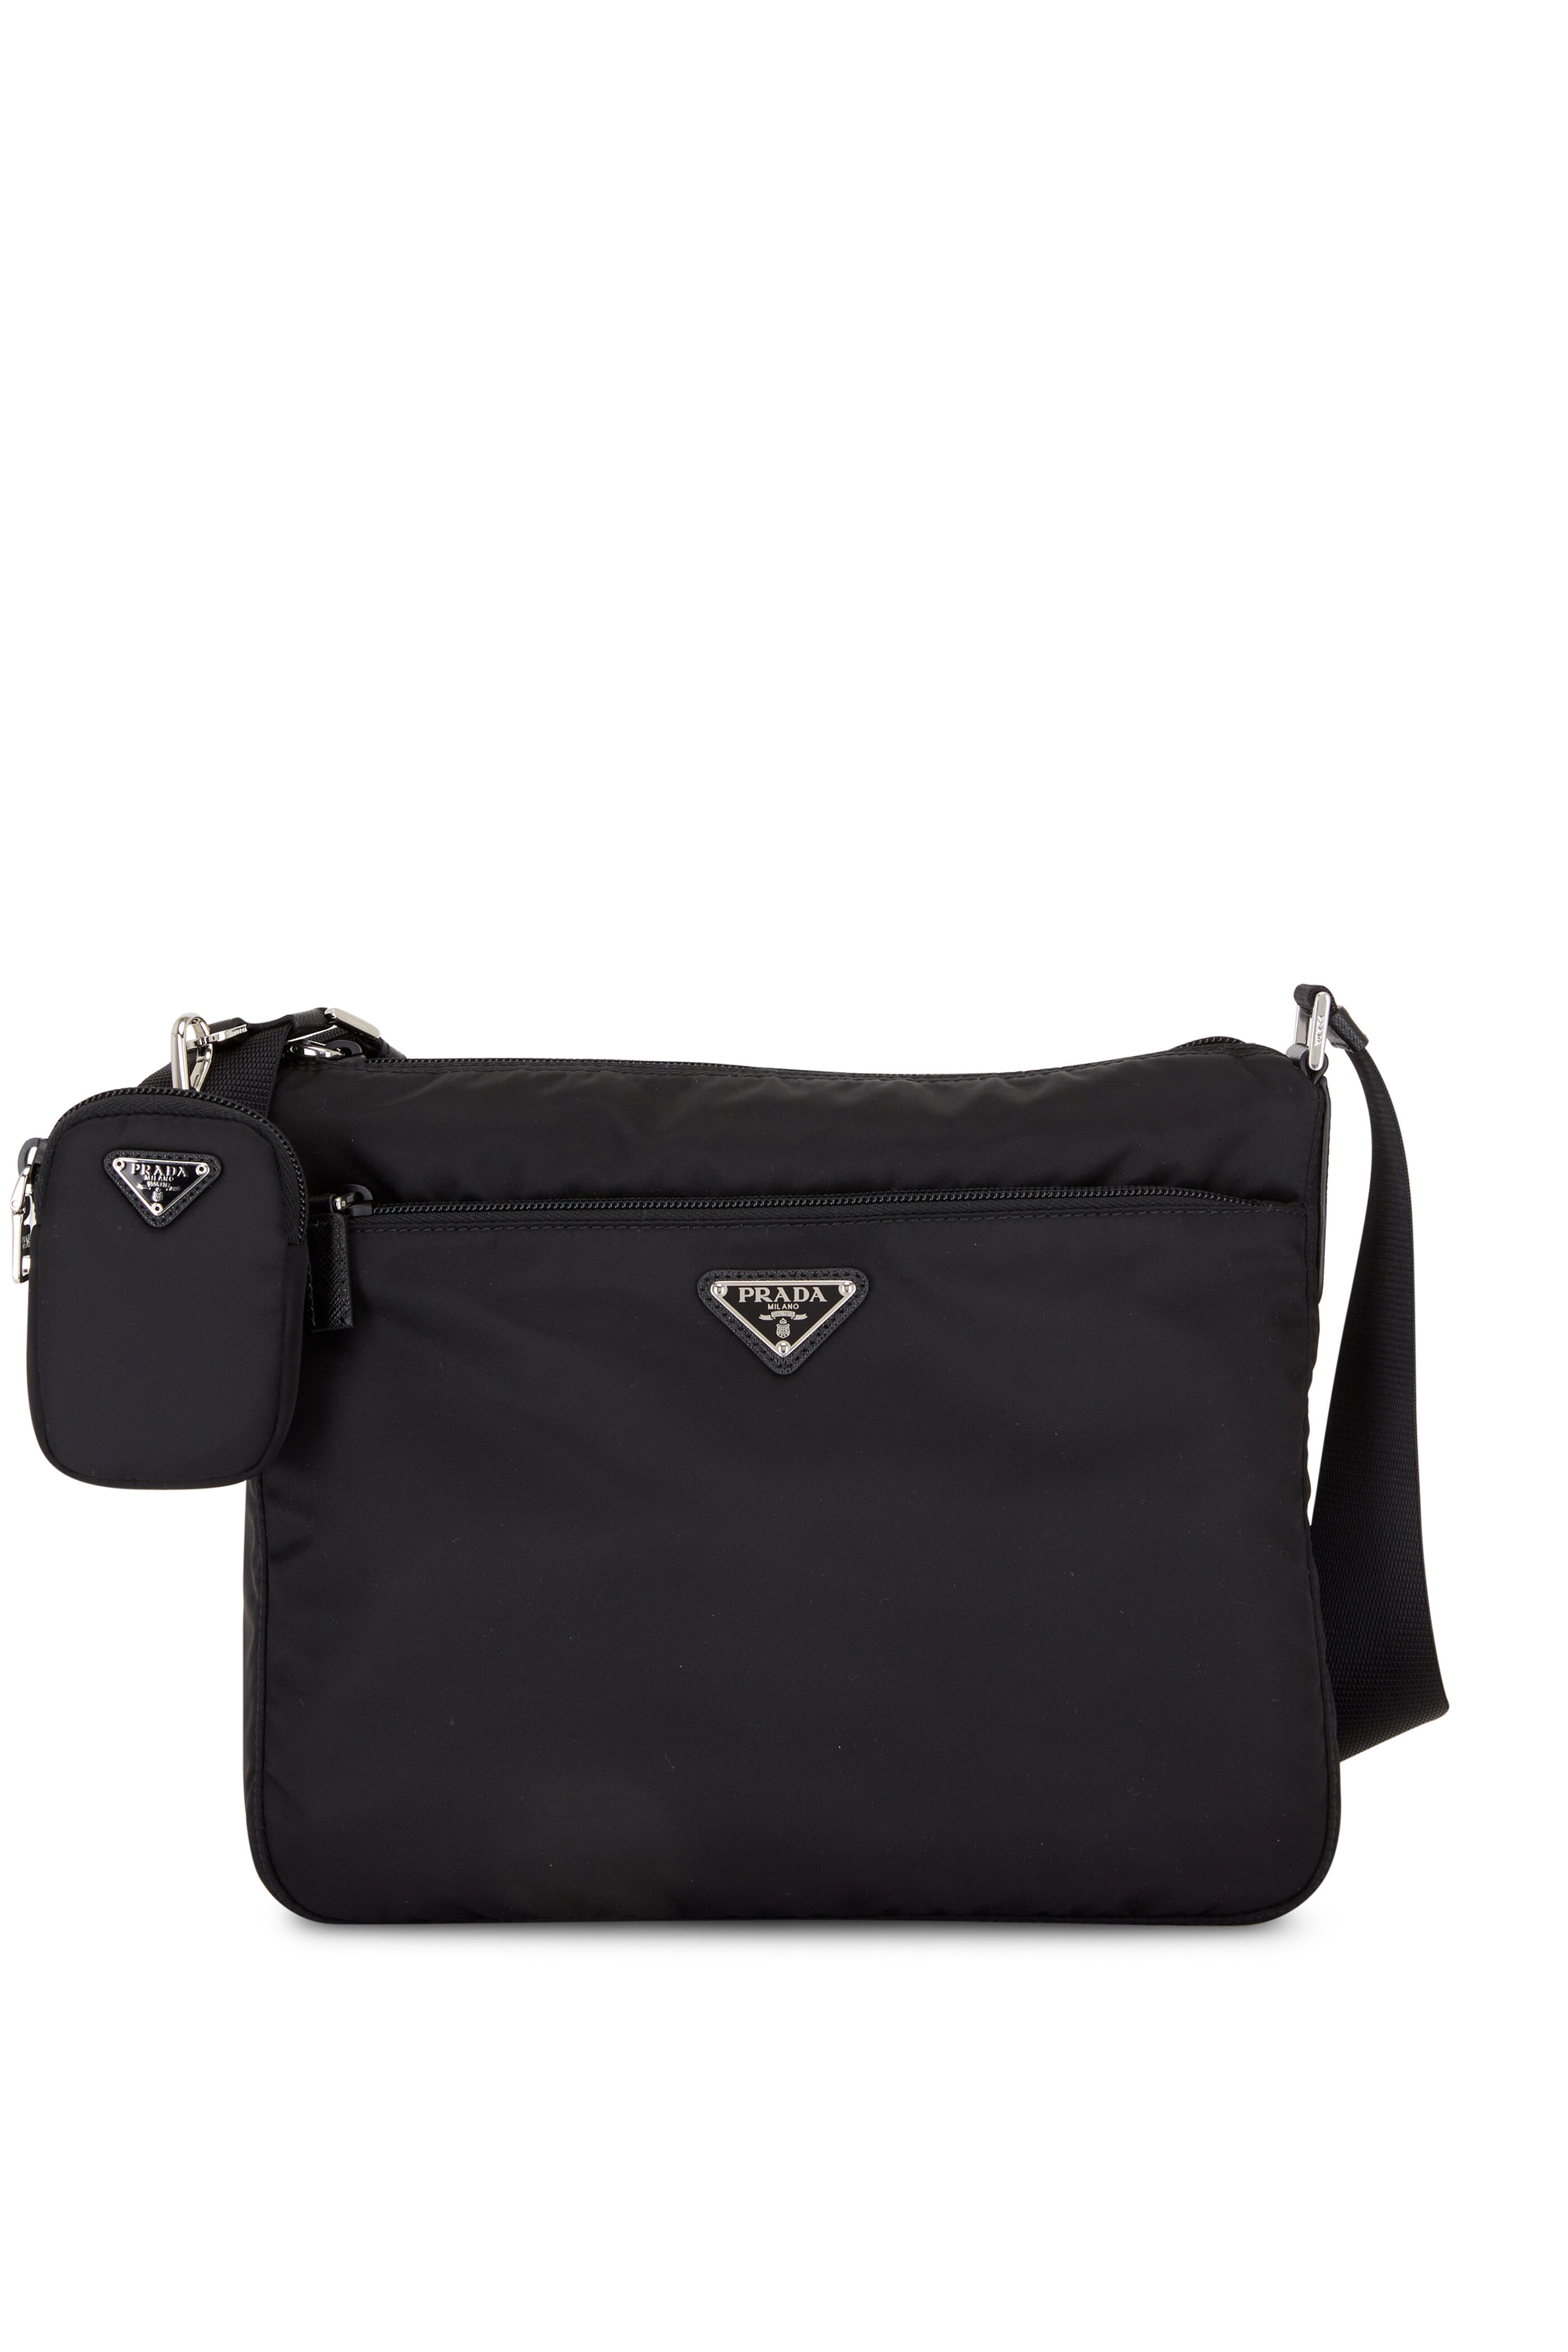 Prada Hobo Black Nylon Shoulder Bag 